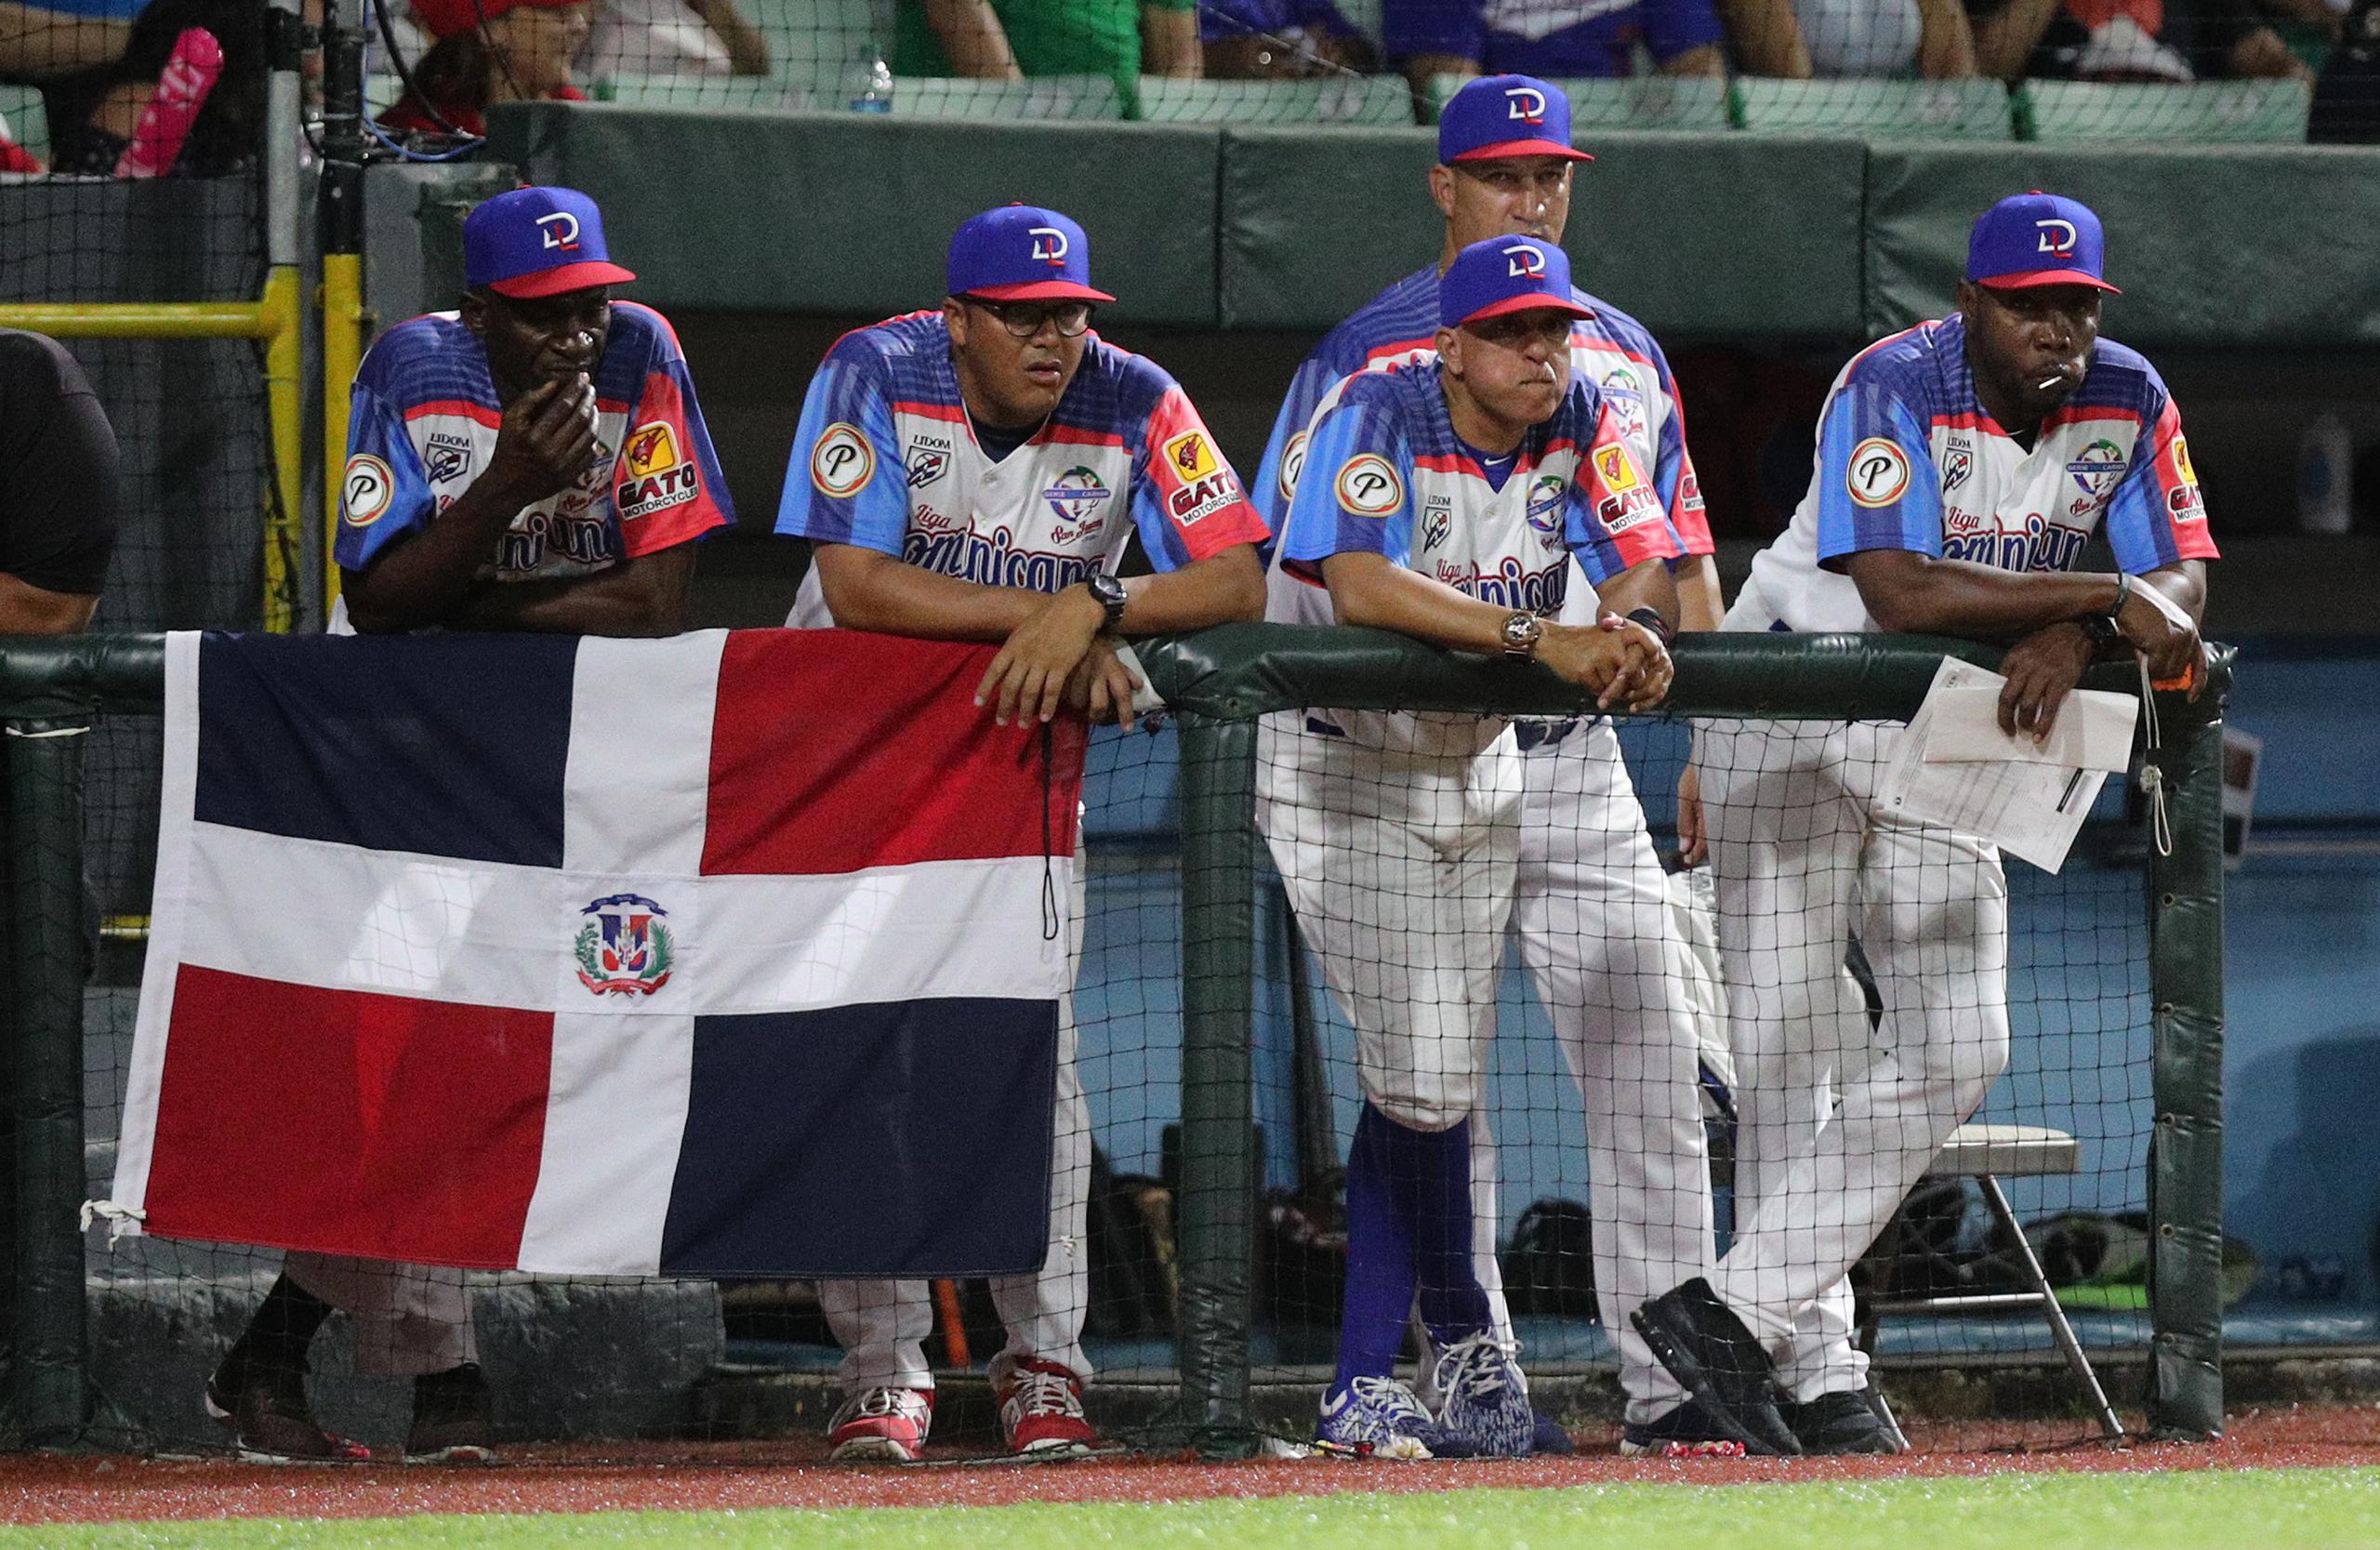 El dirigente de los Toros de República Dominicana, Lino Rivera (tercero desde la izquierda, al frente), designó al cubano Yunesky Maya para abrir contra Puerto Rico en la semifinal del jueves.